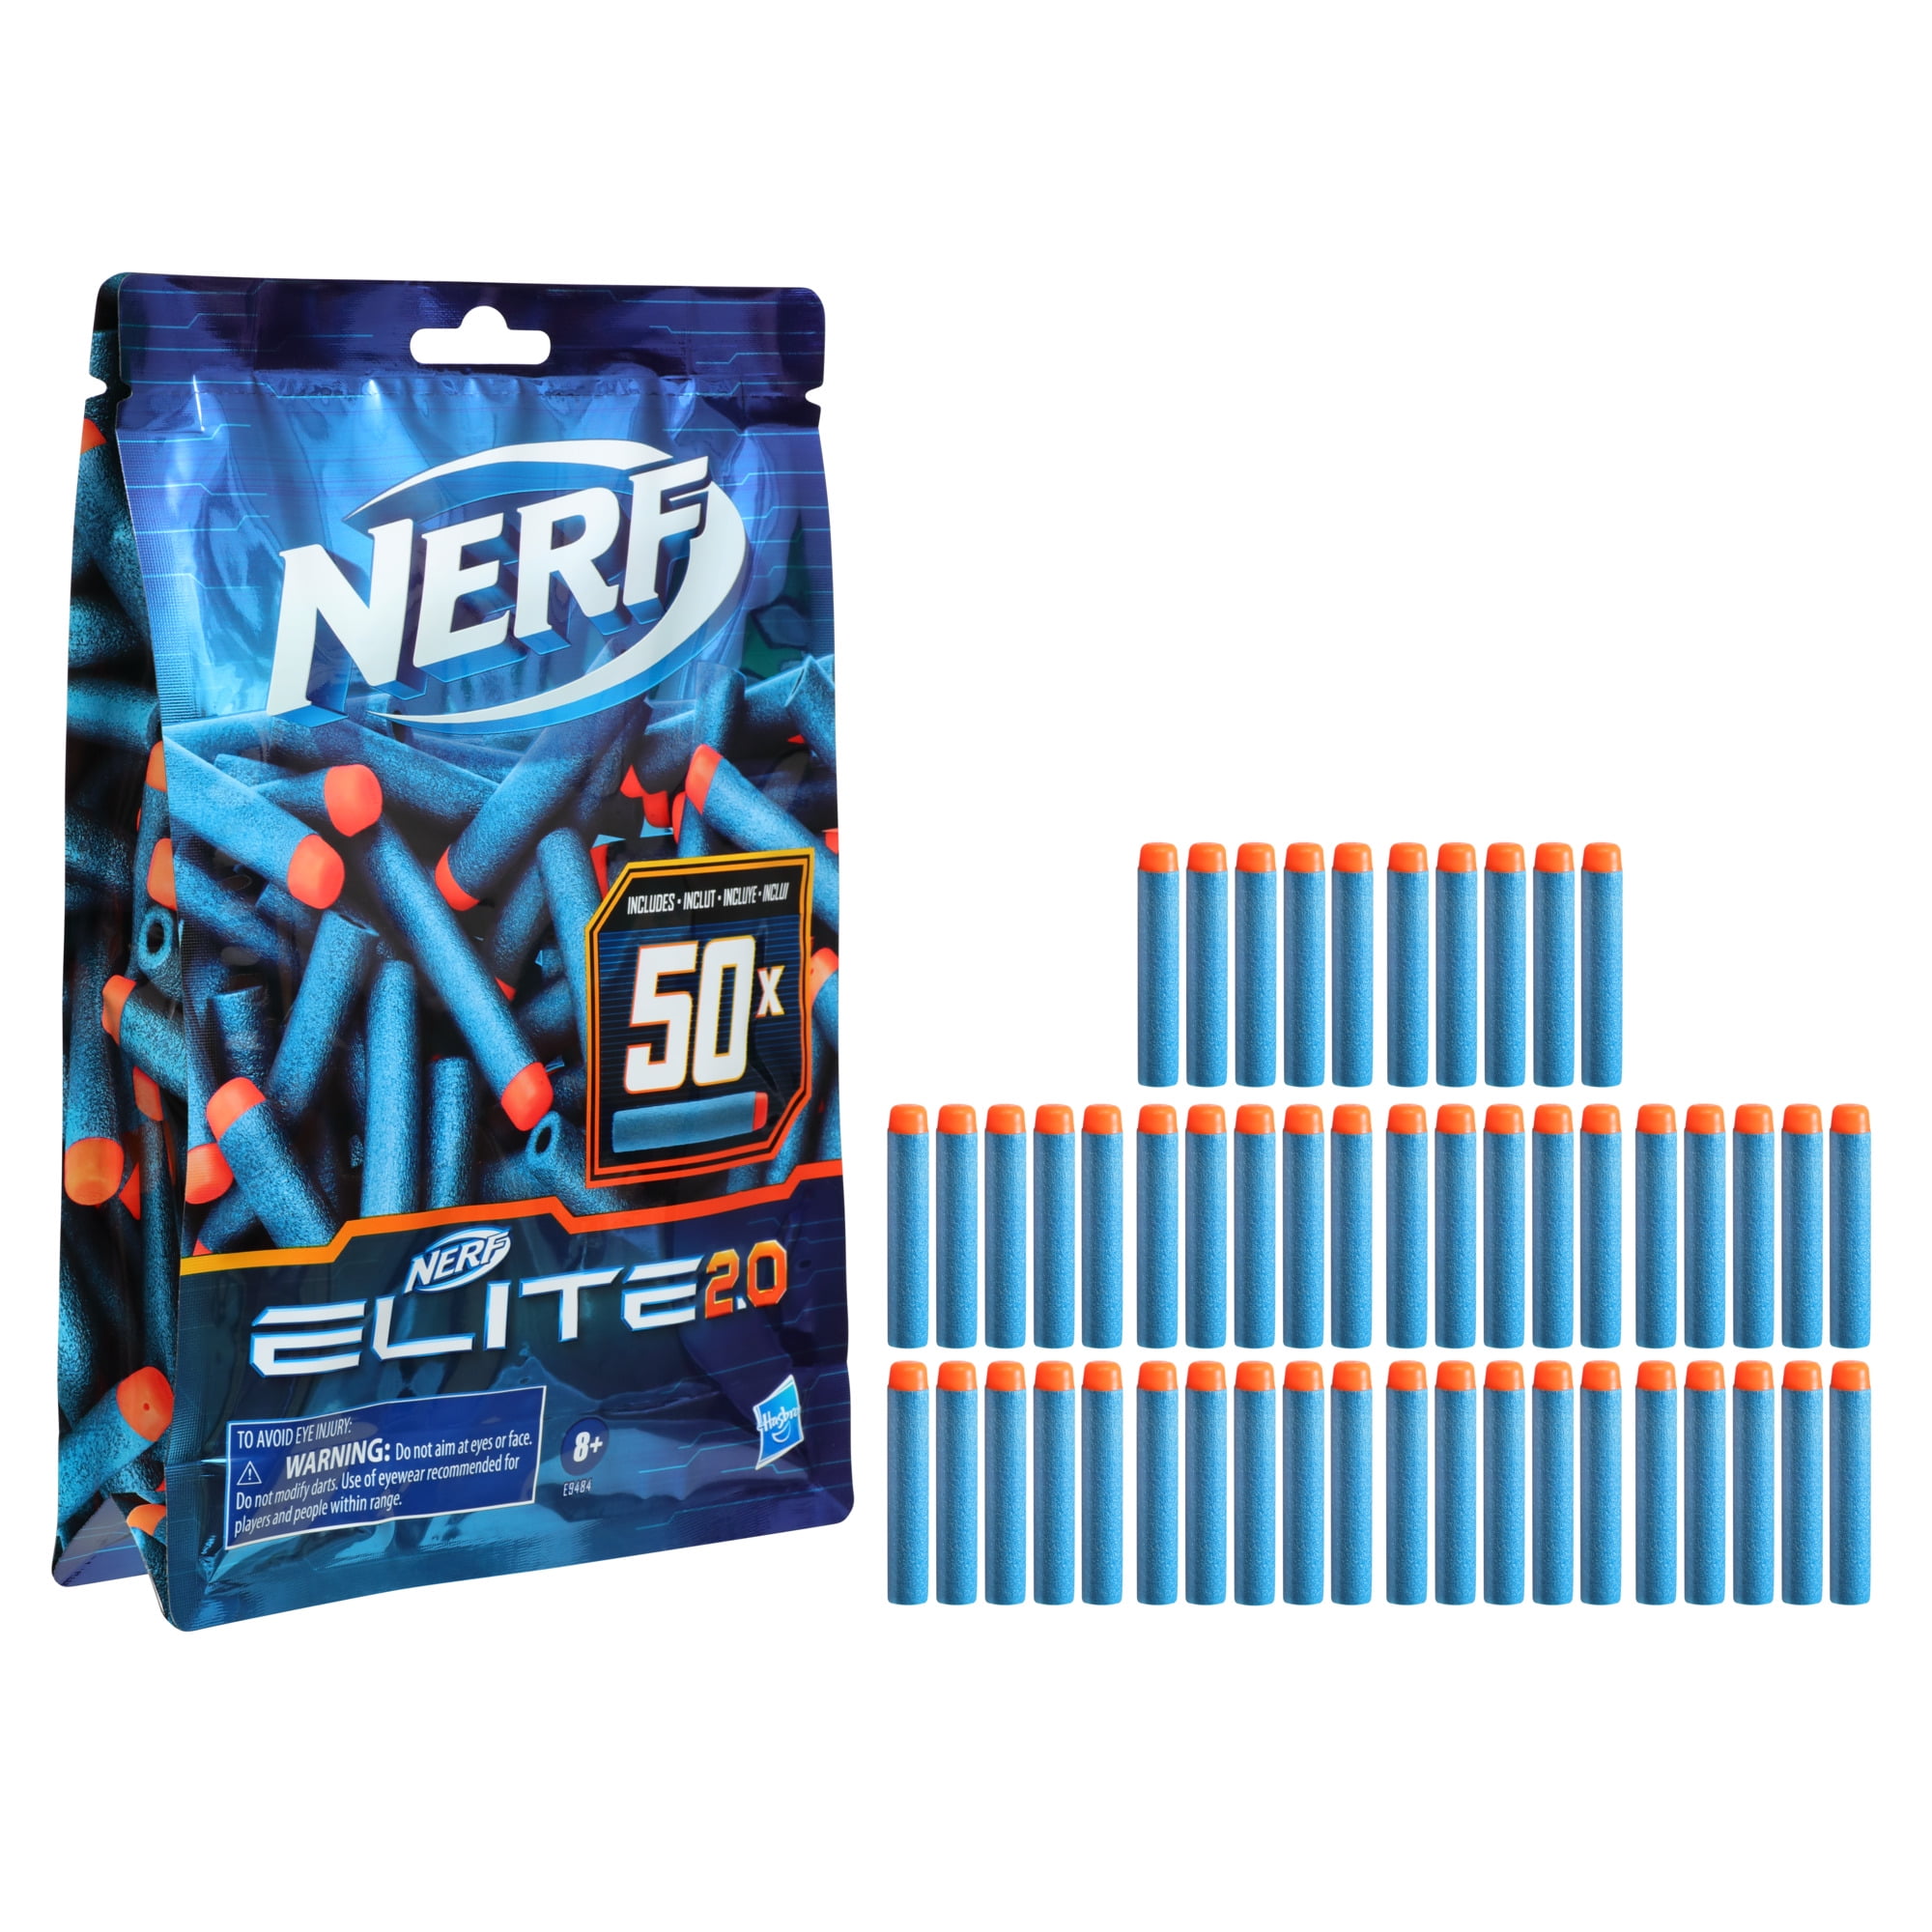 Articulation Overgivelse udtale Nerf Elite 2.0 50-Dart Refill Pack, Includes 50 Official Nerf Elite 2.0  Darts - Walmart.com